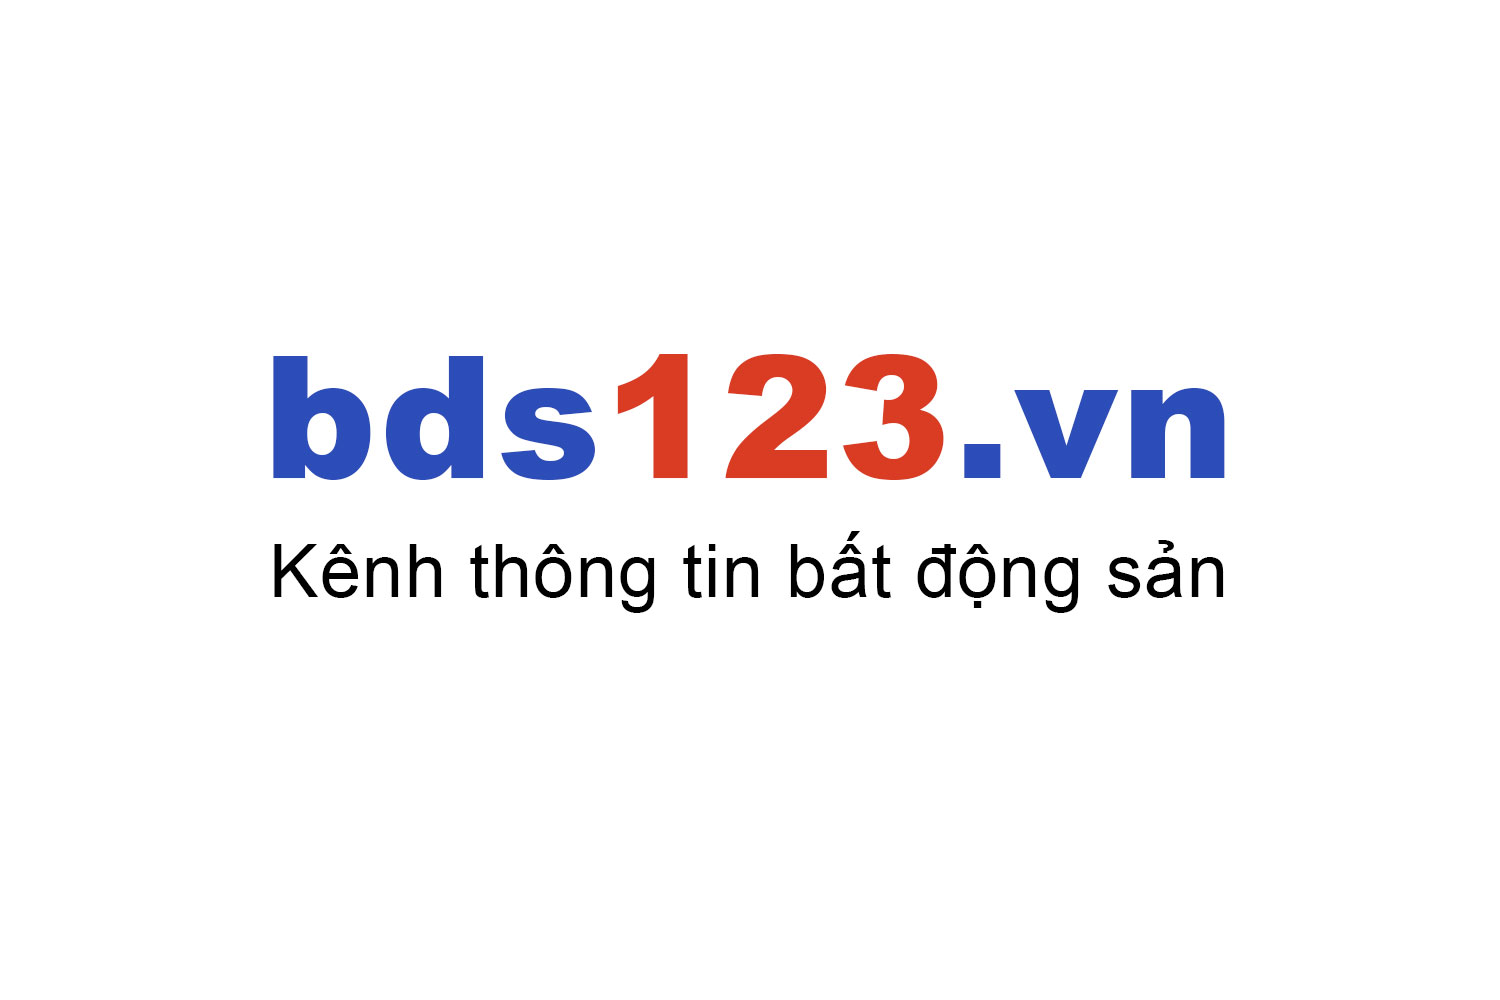 Mua bán chung cư TPHCM ưu đãi giá tốt T8/2022 - Bds123.vn